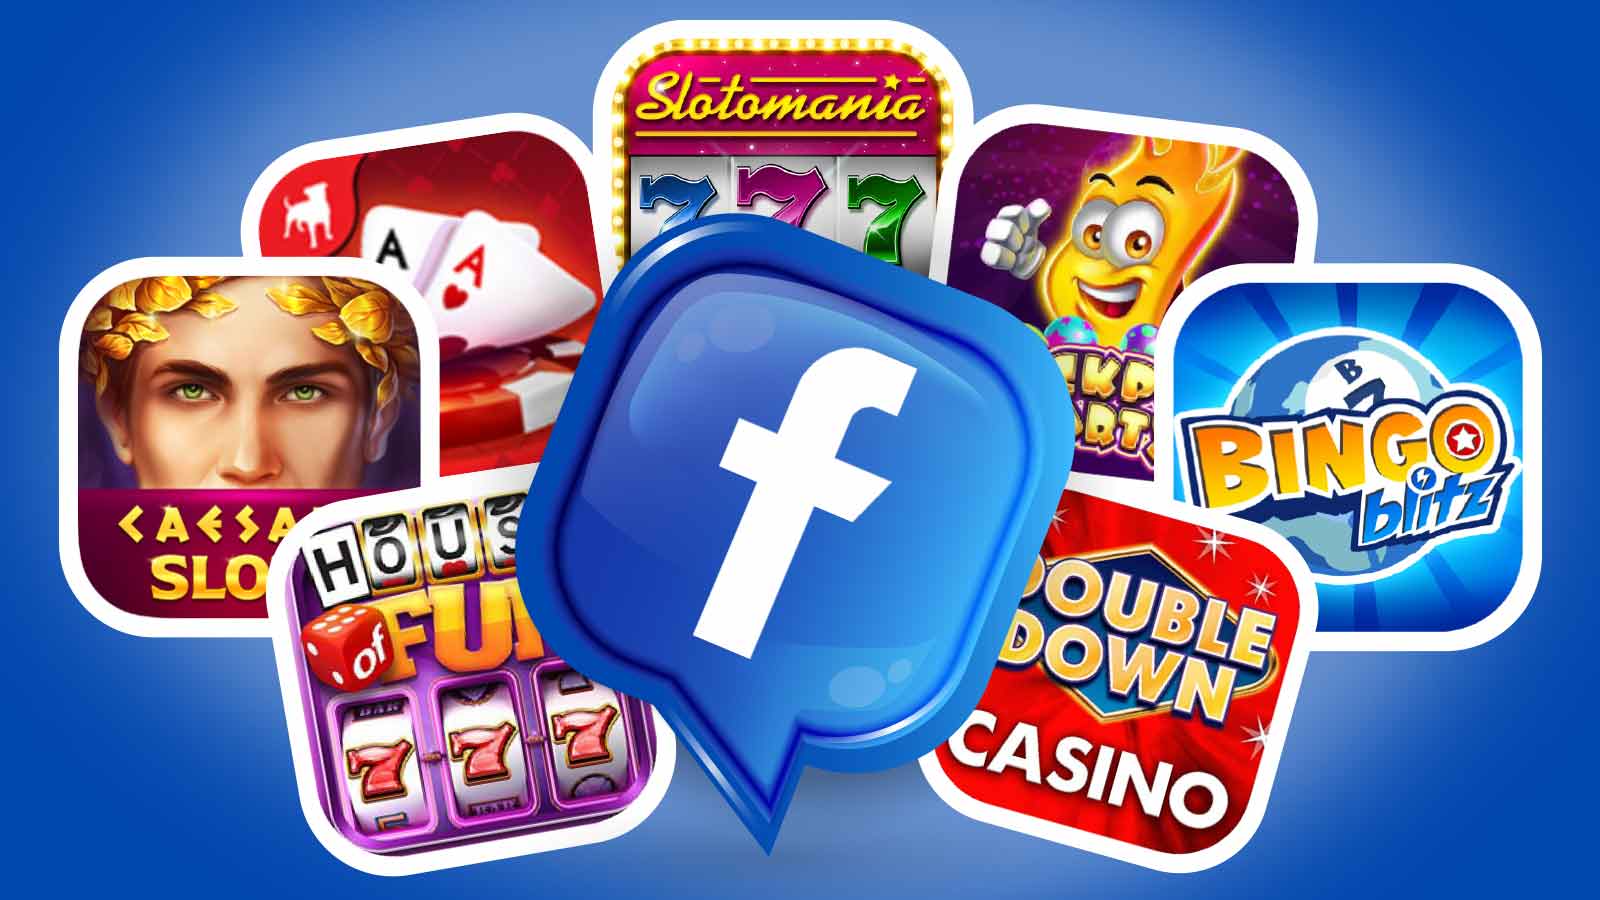 Jocuri de noroc pe Facebook - Ce titluri pot încerca jucătorii?